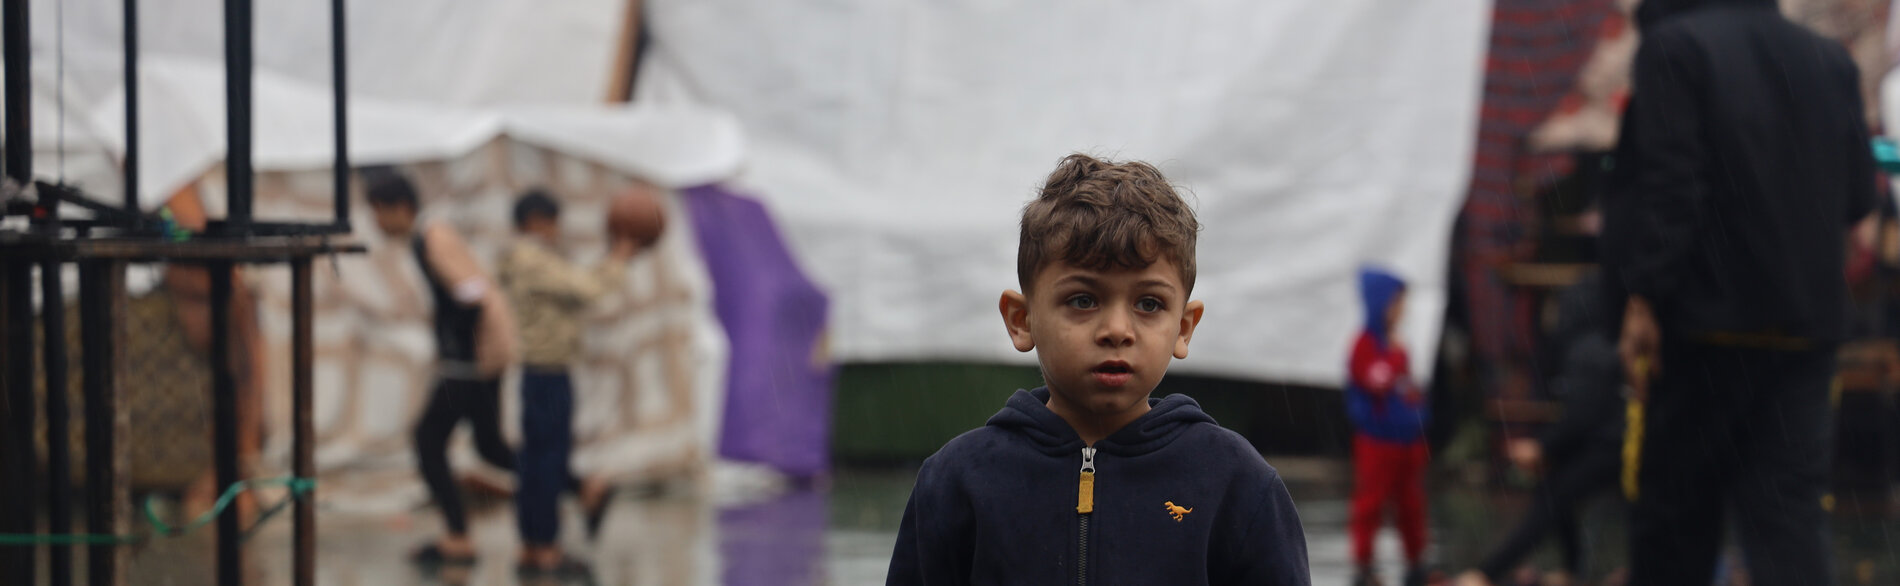 فتى مُهجّر عمره ستة أعوام في جنوب غزة، حيث زادت الأمطار الغزيرة من تفاقم الظروف المعيشية المريعة أصلًا في أوساط الأشخاص الذين يعيشون في العراء، وفاقمت من مخاطر انتشار الأمراض المنقولة بالمياه. تصوير اليونيسف/البابا، 6 كانون الأول/ديسمبر 2023